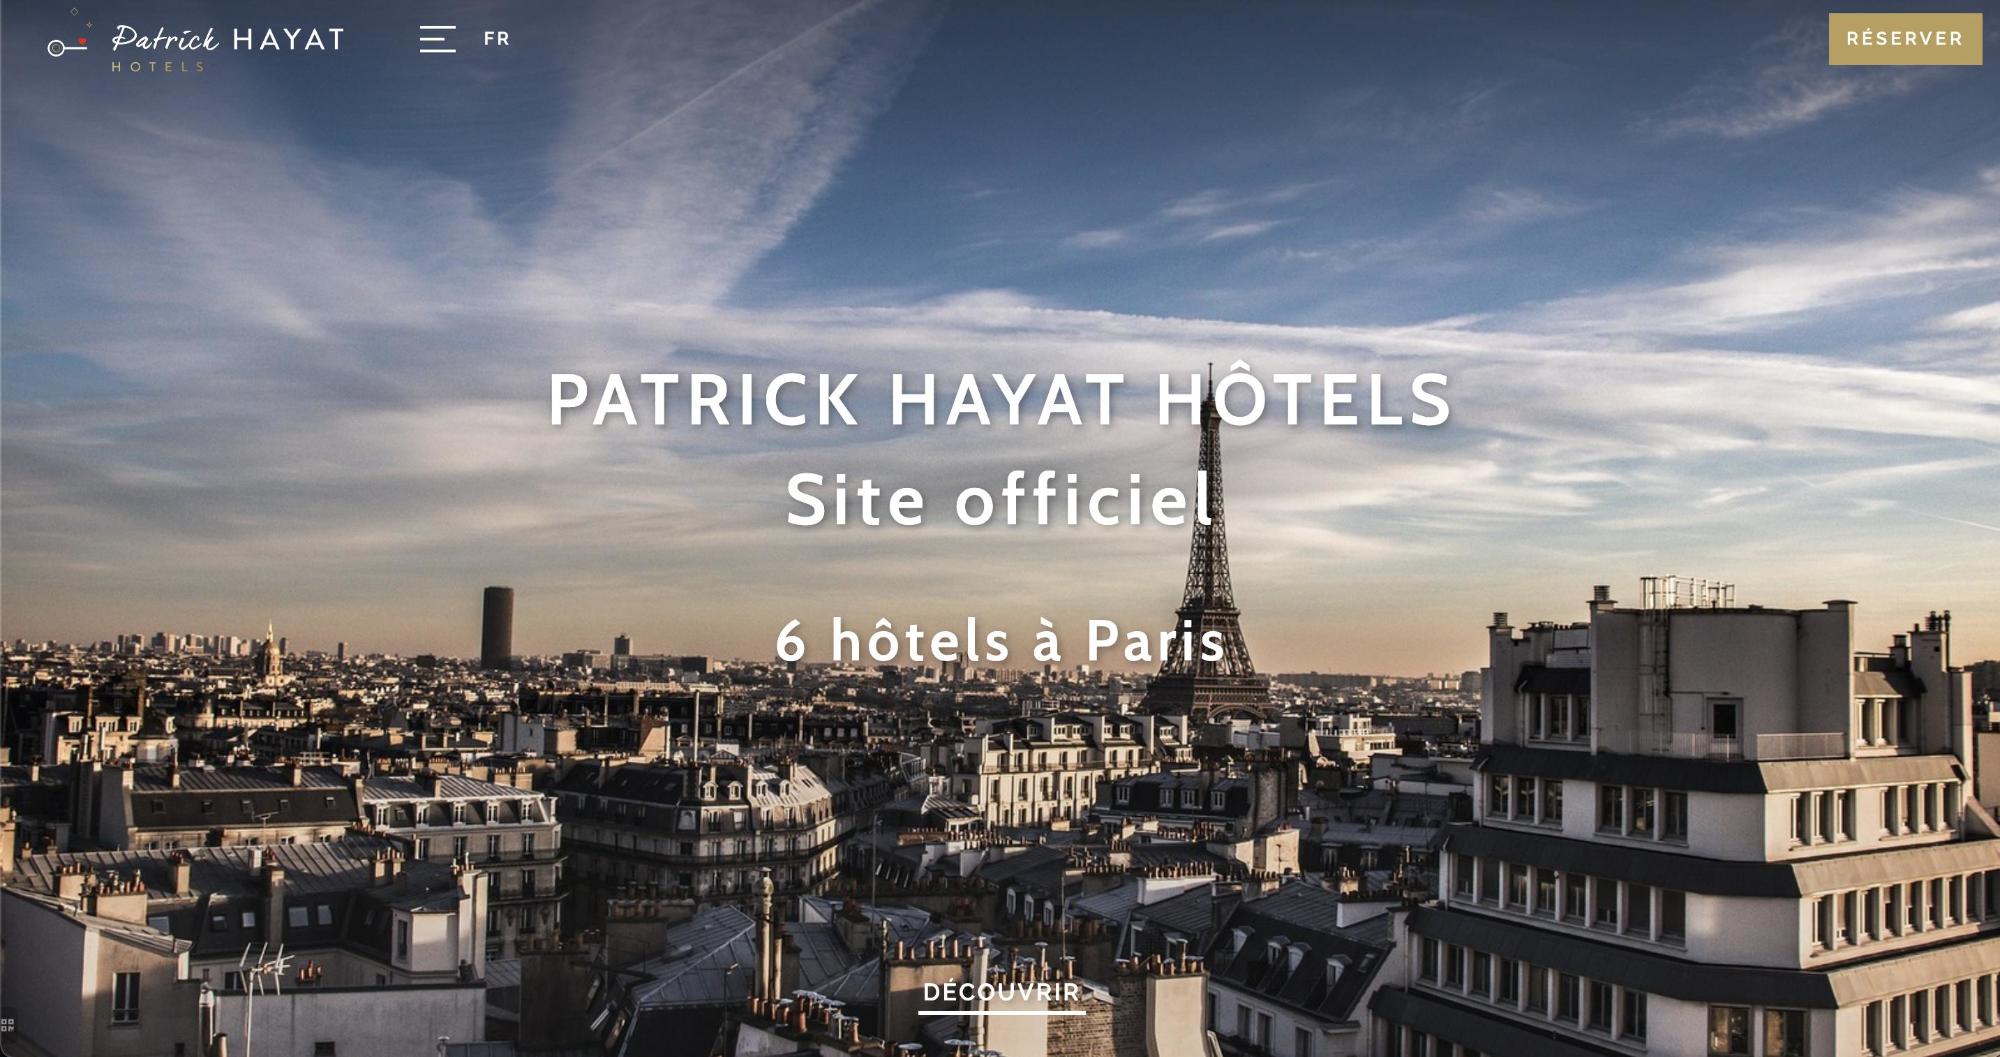 Agence MMCréation | Portfolio Patrick Hayat Hôtels